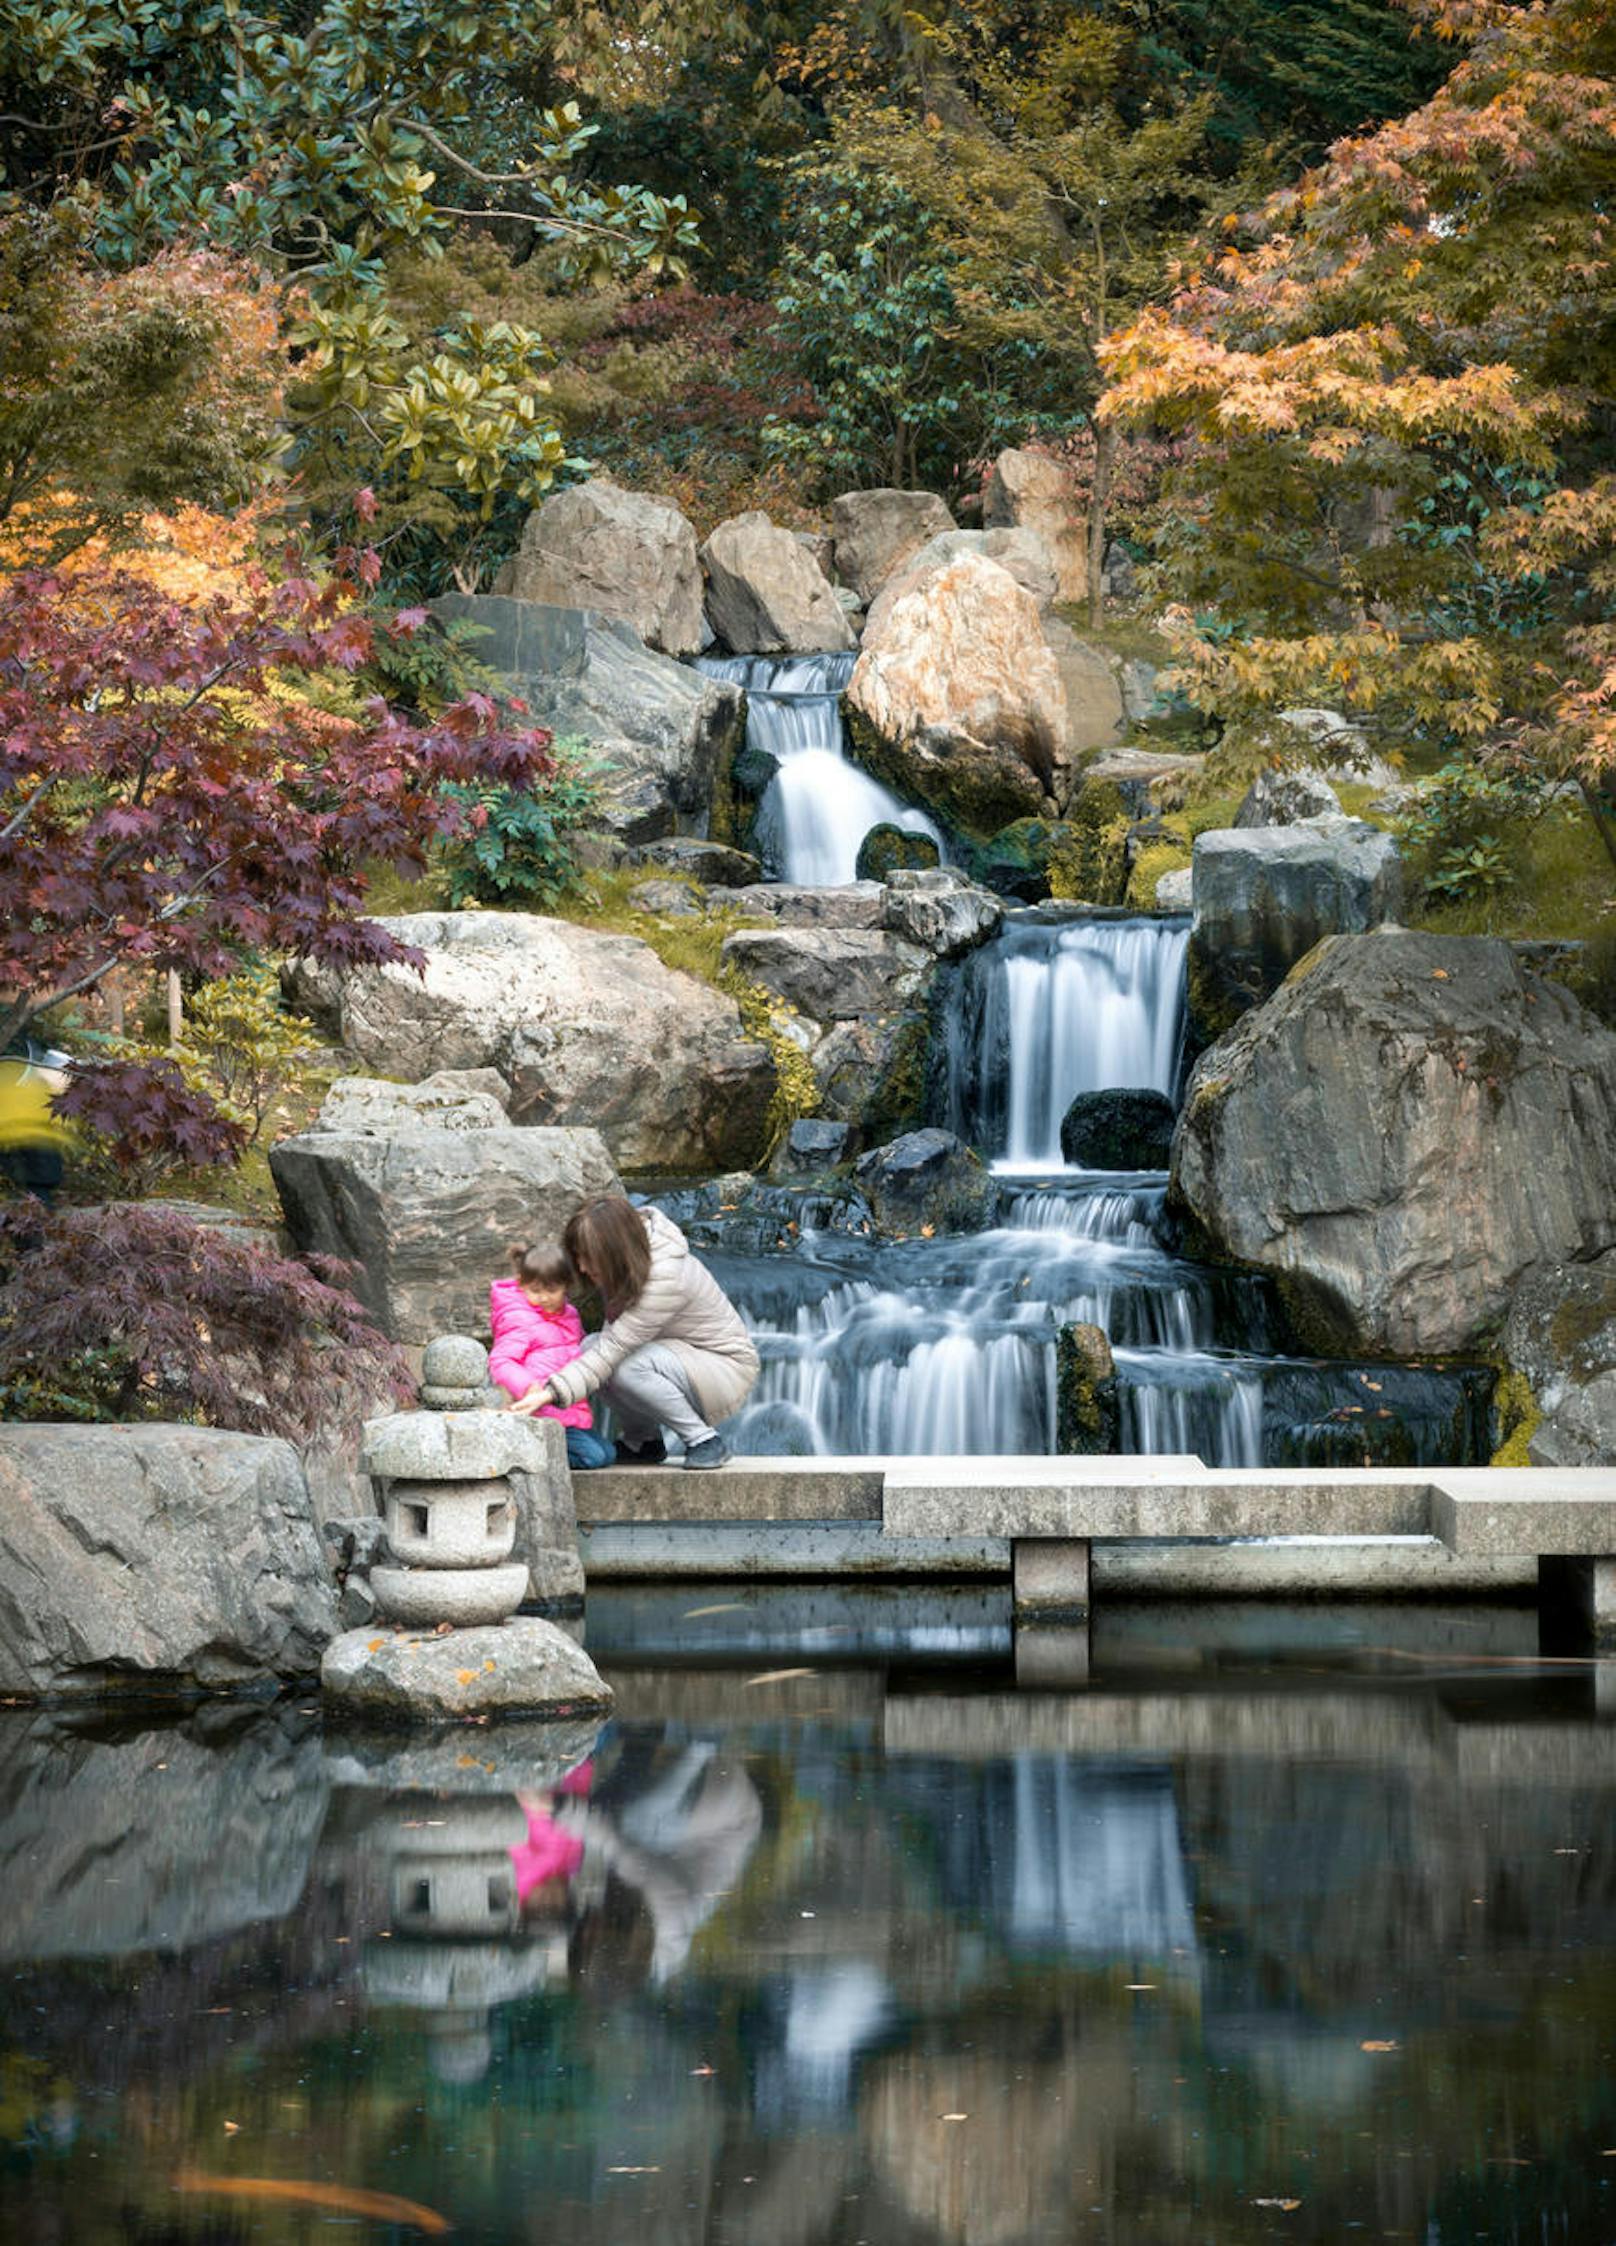 Kyoto Garden - der kleine Kyoto Garden im Holland Park im Westen Londons ist der ideale Ort zum Entspannen. Der Garten ist nach japanischen Vorbild angelegt und neben einem Koiteich spazieren auch einige Pfaue durch den Park.